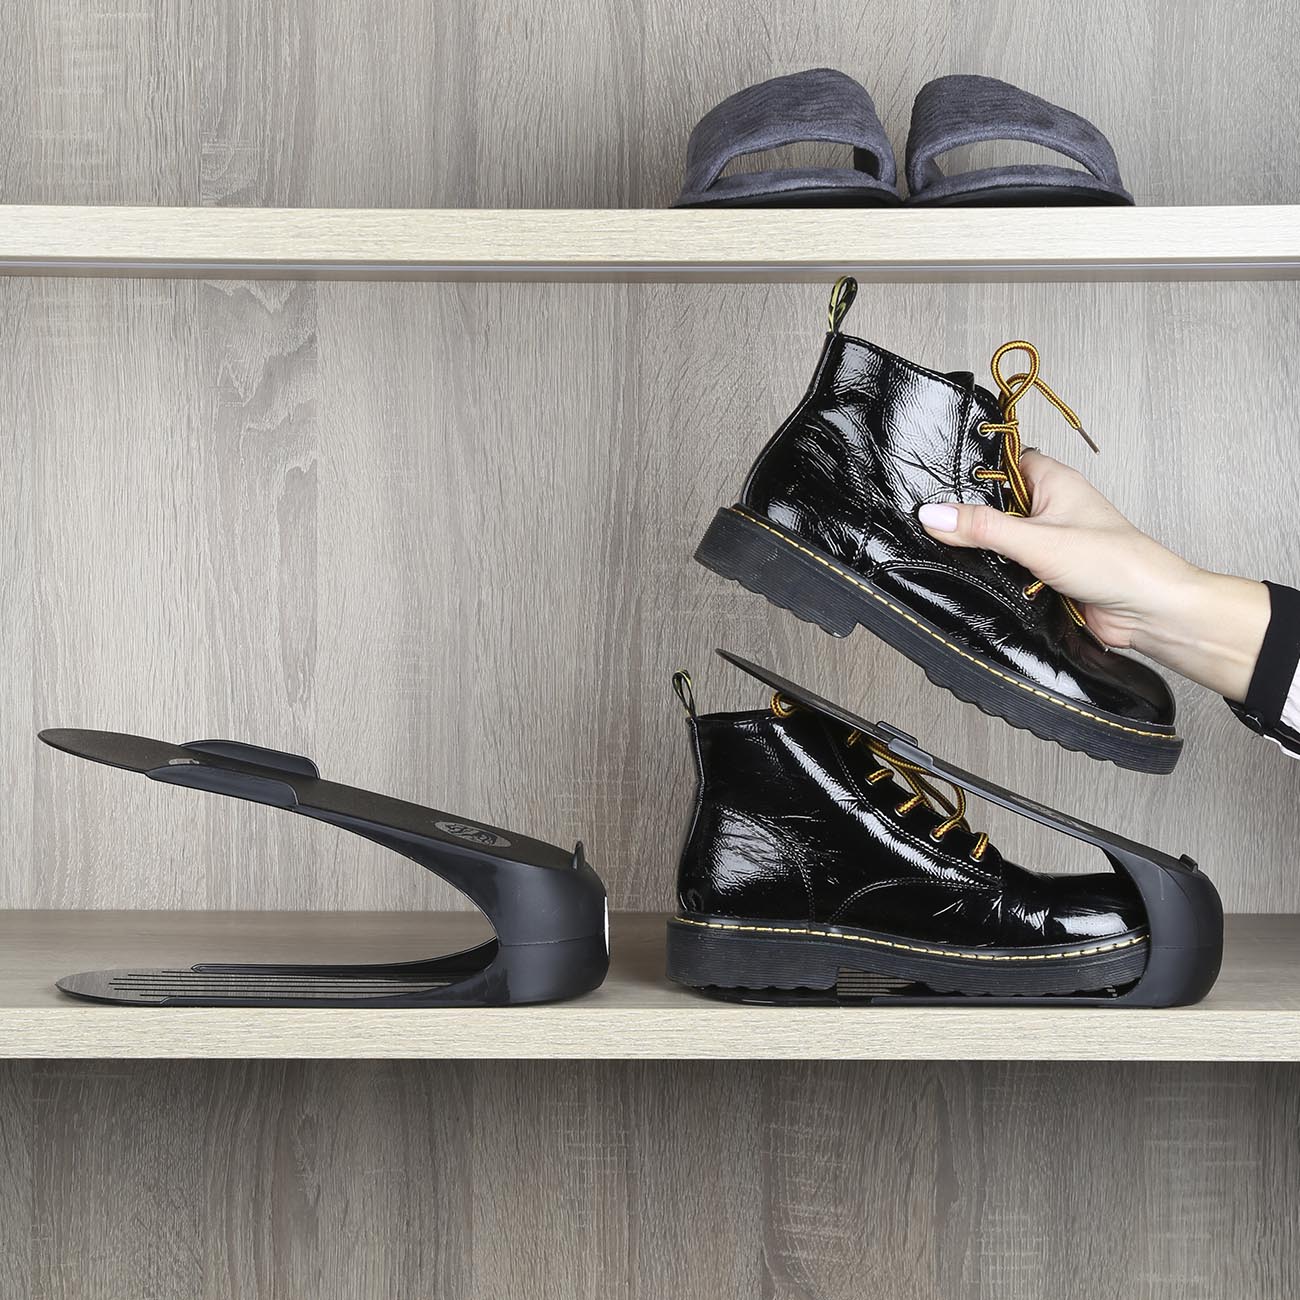 Органайзер-подставка для женской обуви, 26 см, пластик, черный, Compact изображение № 3